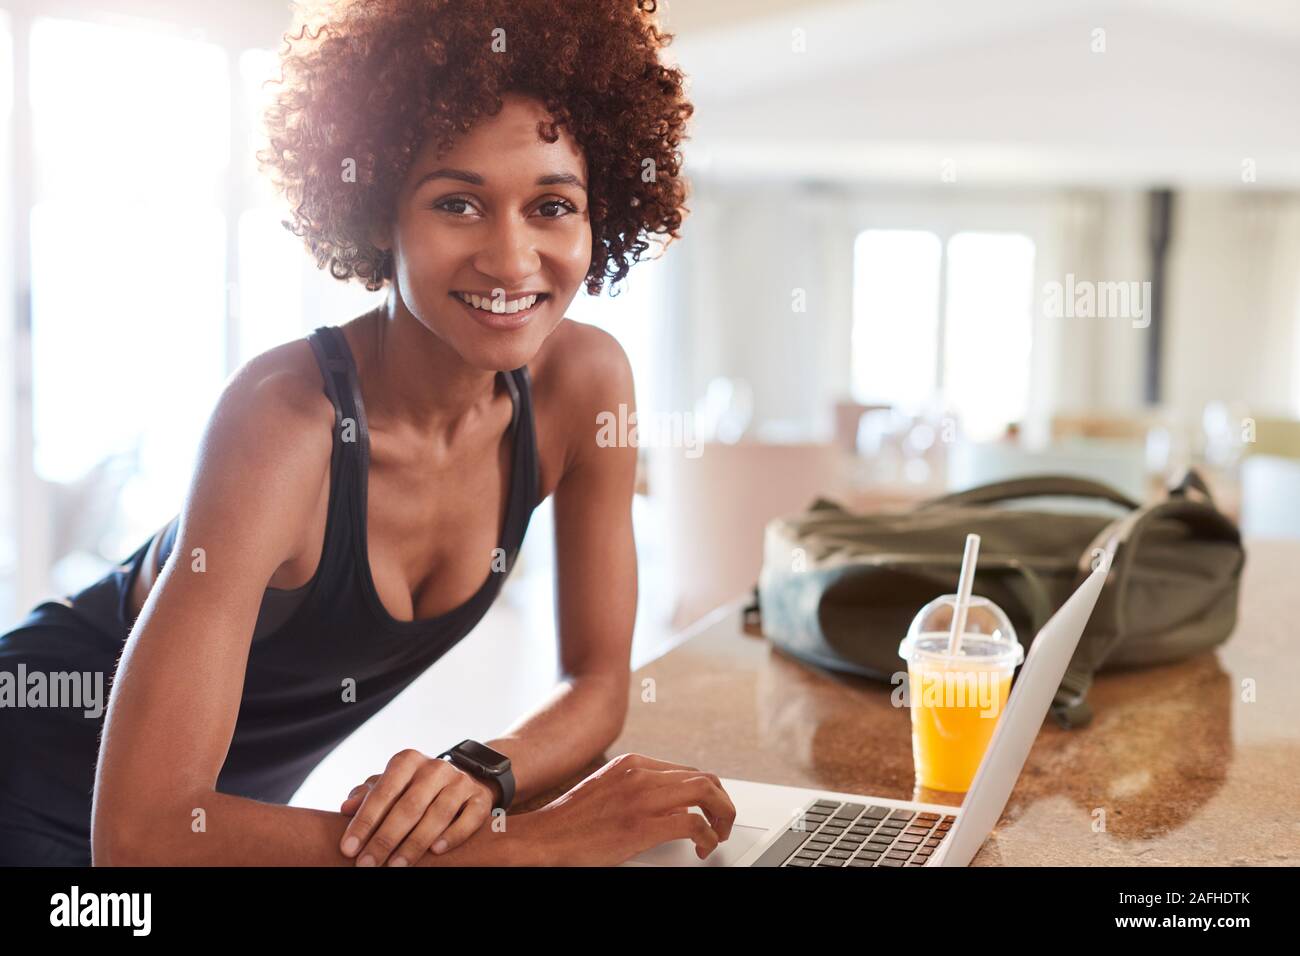 African American Woman millénaire contrôler les données d'entraînement sur ordinateur portable après sport smiling to camera Banque D'Images